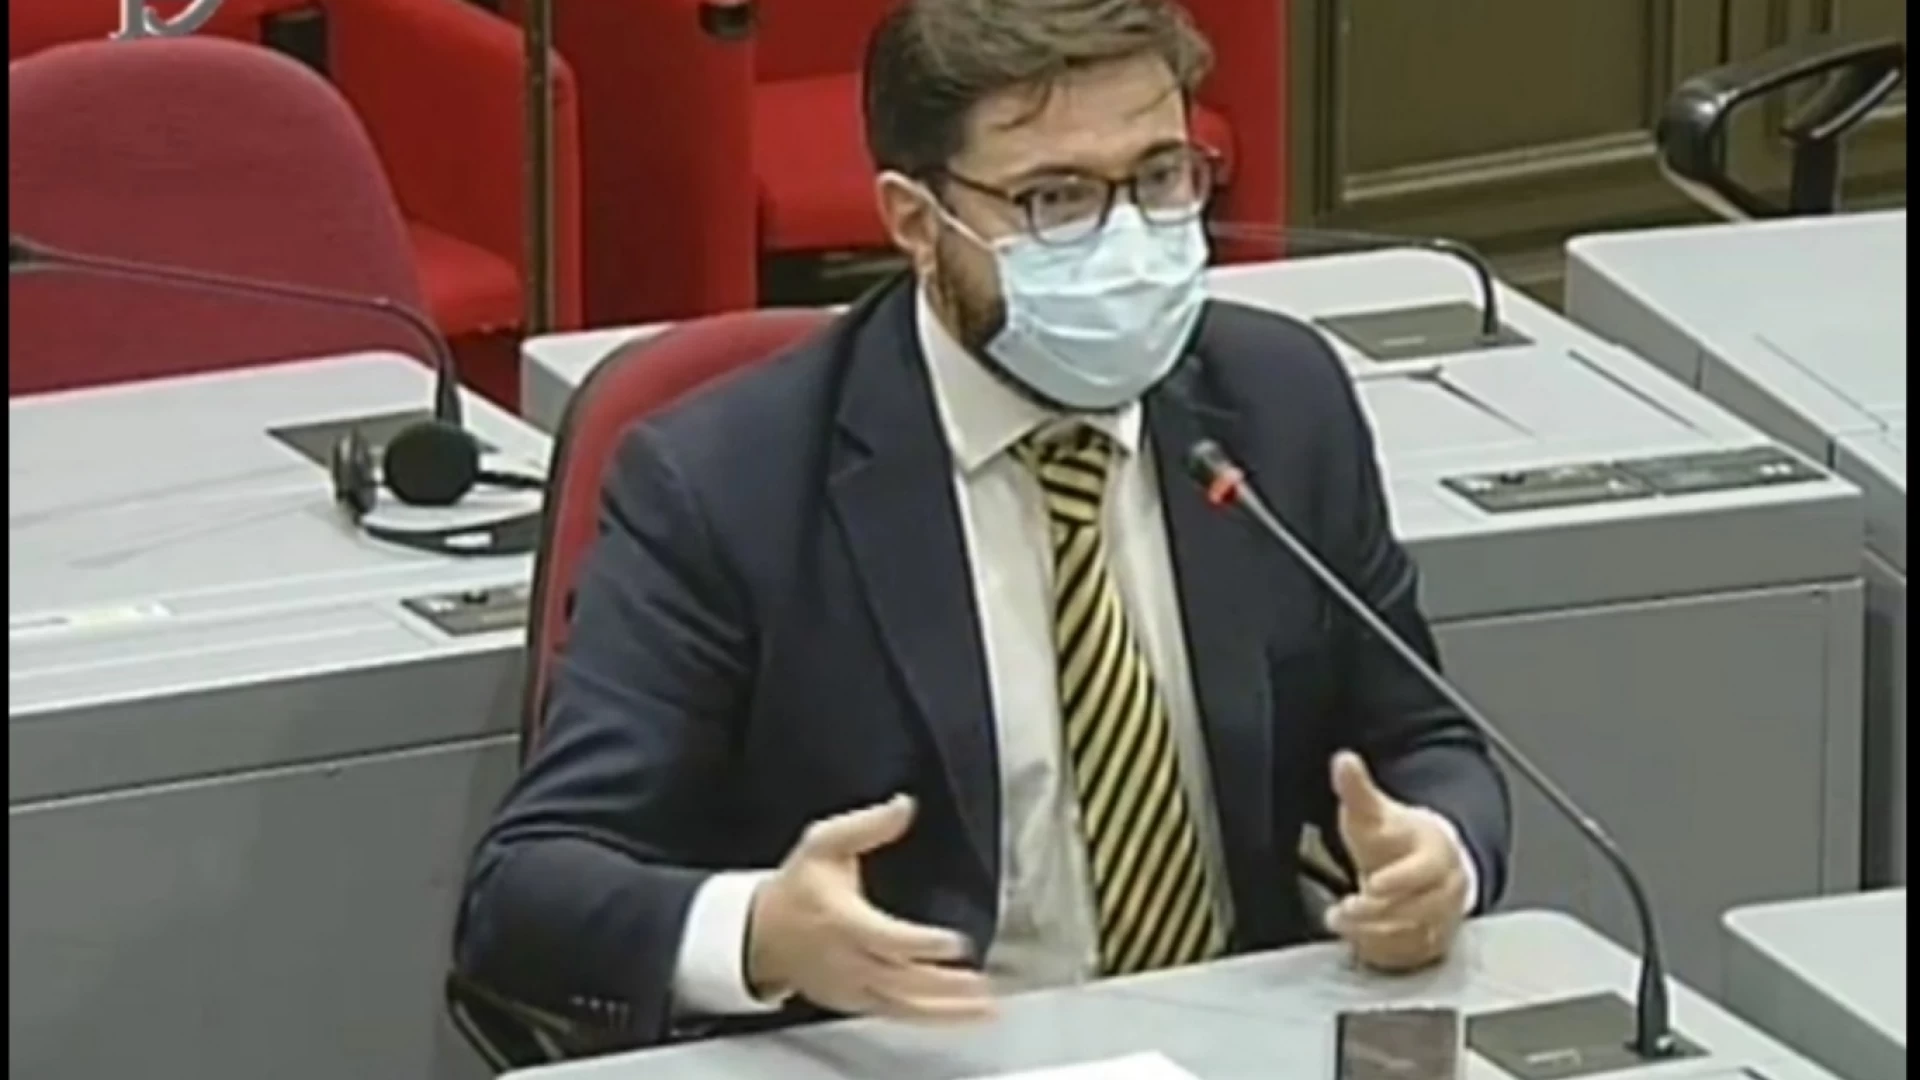 Sanità, interrogazione alla Camera di Antonio Federico. “Il Ministro verifichi l’organizzazione del Cardarelli”.